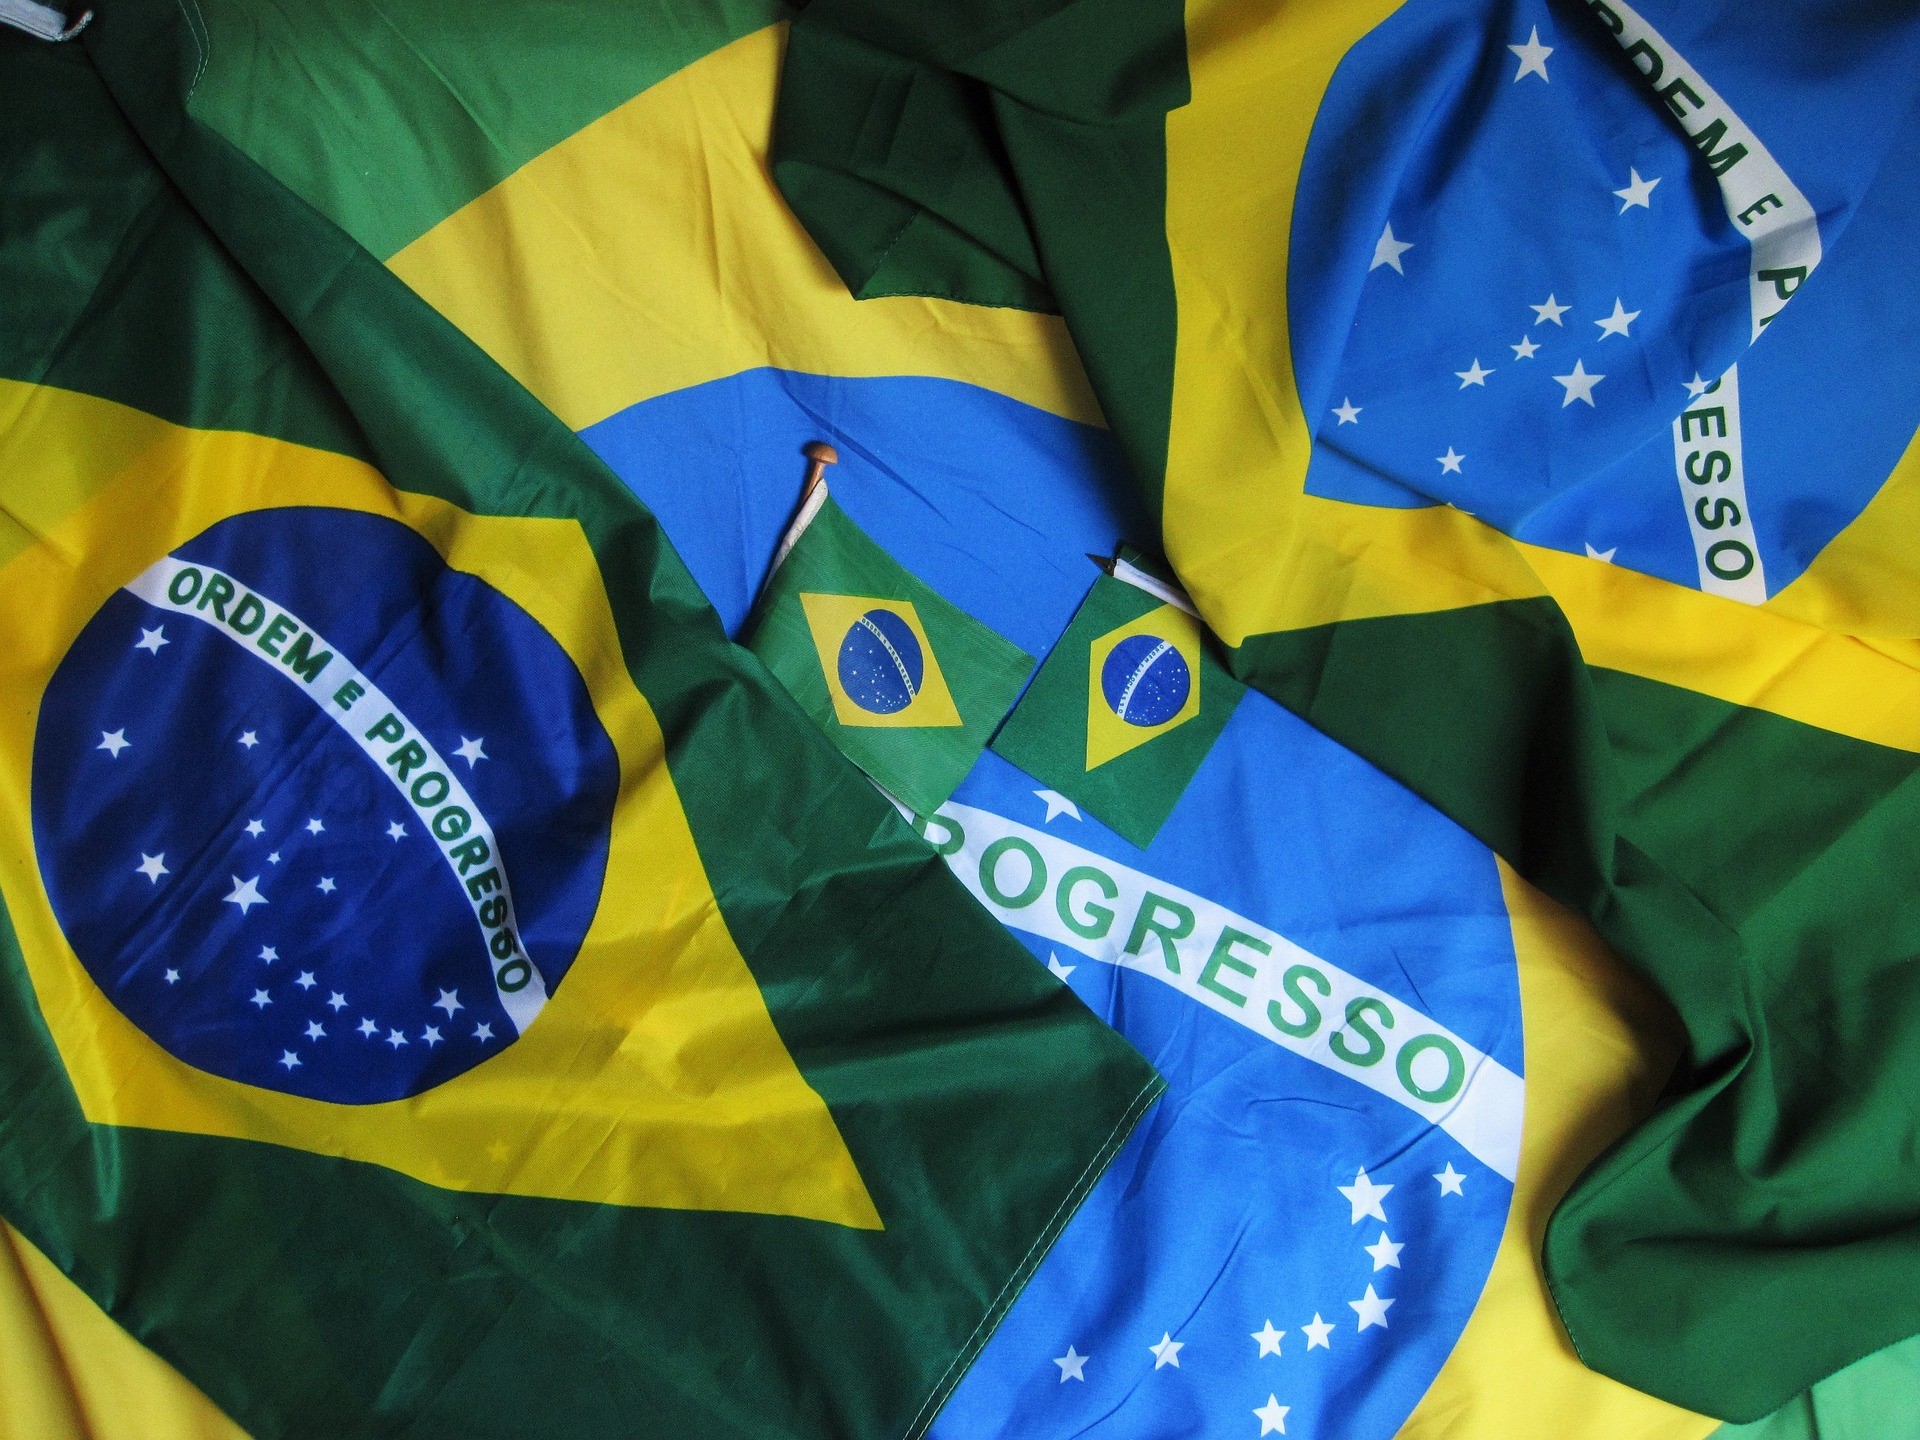 EWZS, FLBR och EWZ är tre brasilianska ETFer för fjärde kvartalet 2021. Brasiliens börshandlade fonder (ETF: er) ger exponering mot den största ekonomin i Latinamerika